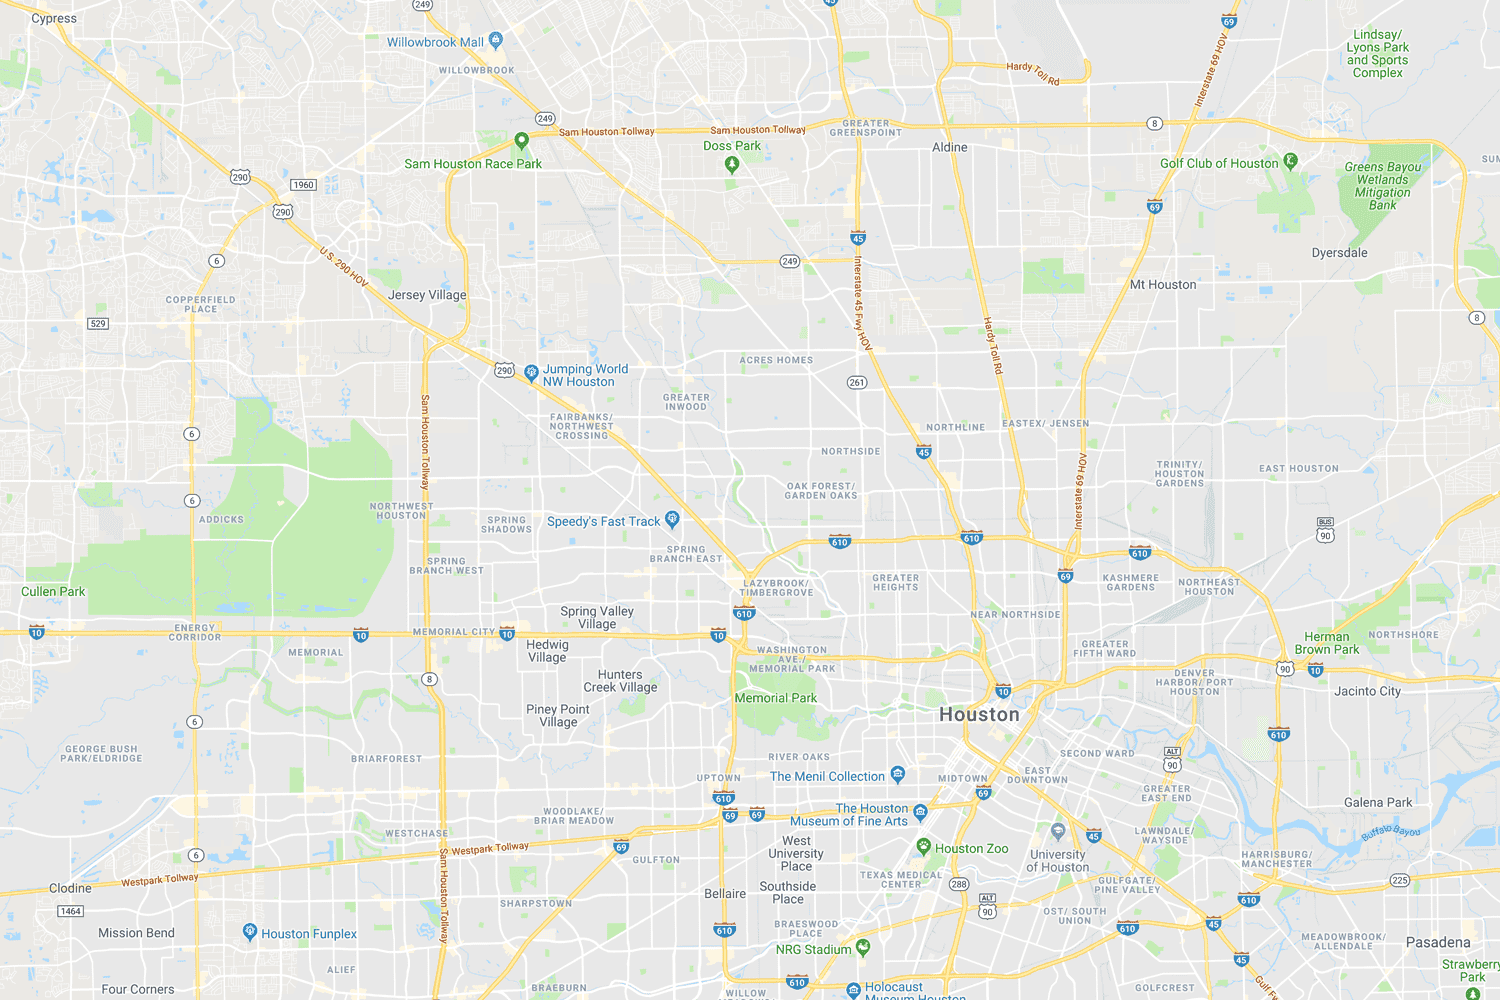 Houston area TPW locations